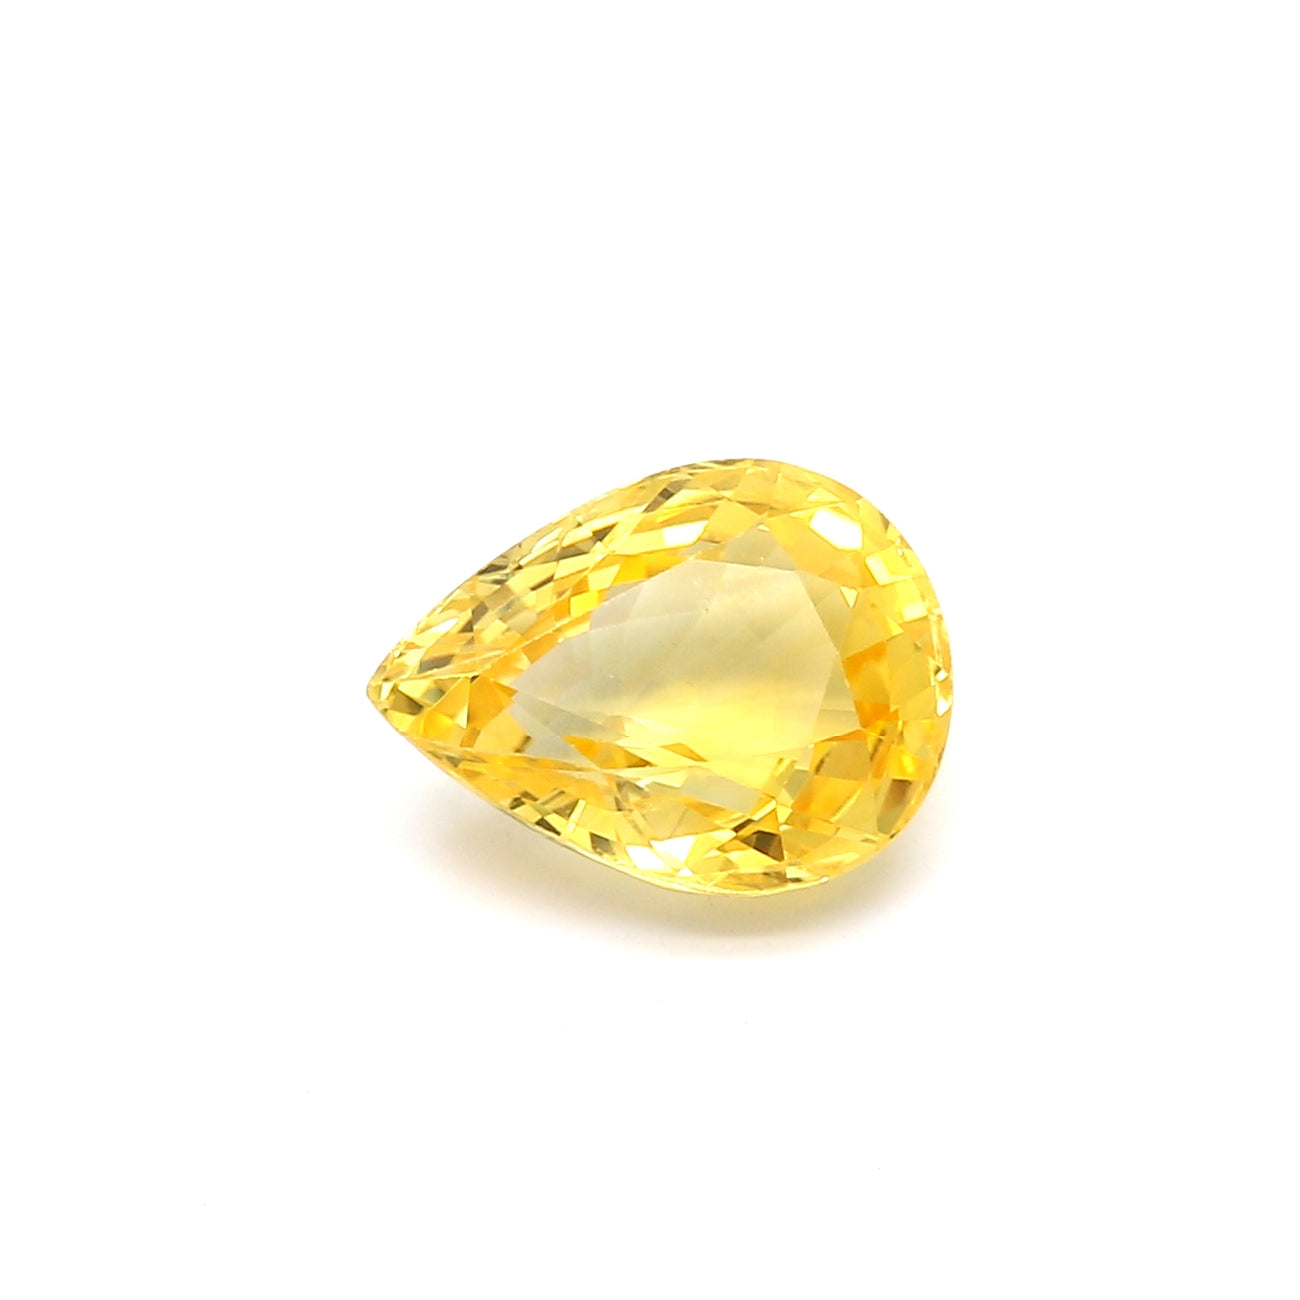 3.19ct Yellow, Pear Shape Sapphire, Heated, Sri Lanka - 10.18 x 7.75 x 4.77mm